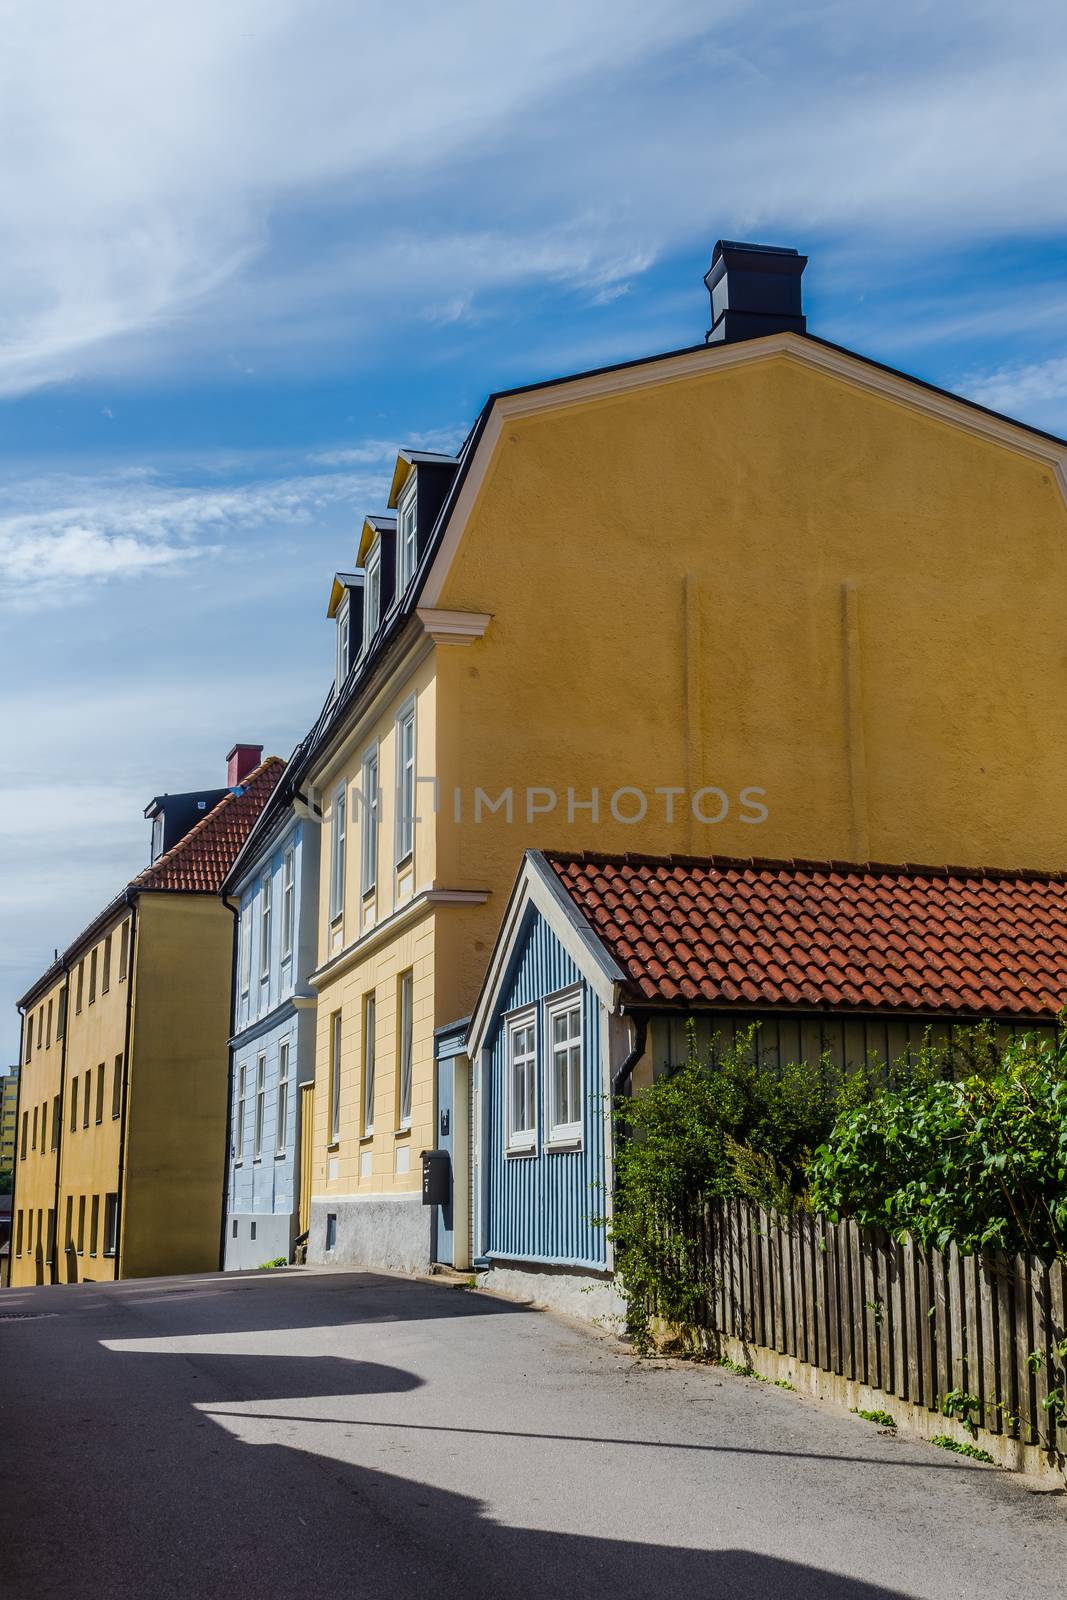 Small street in Karlskrona, Sweden